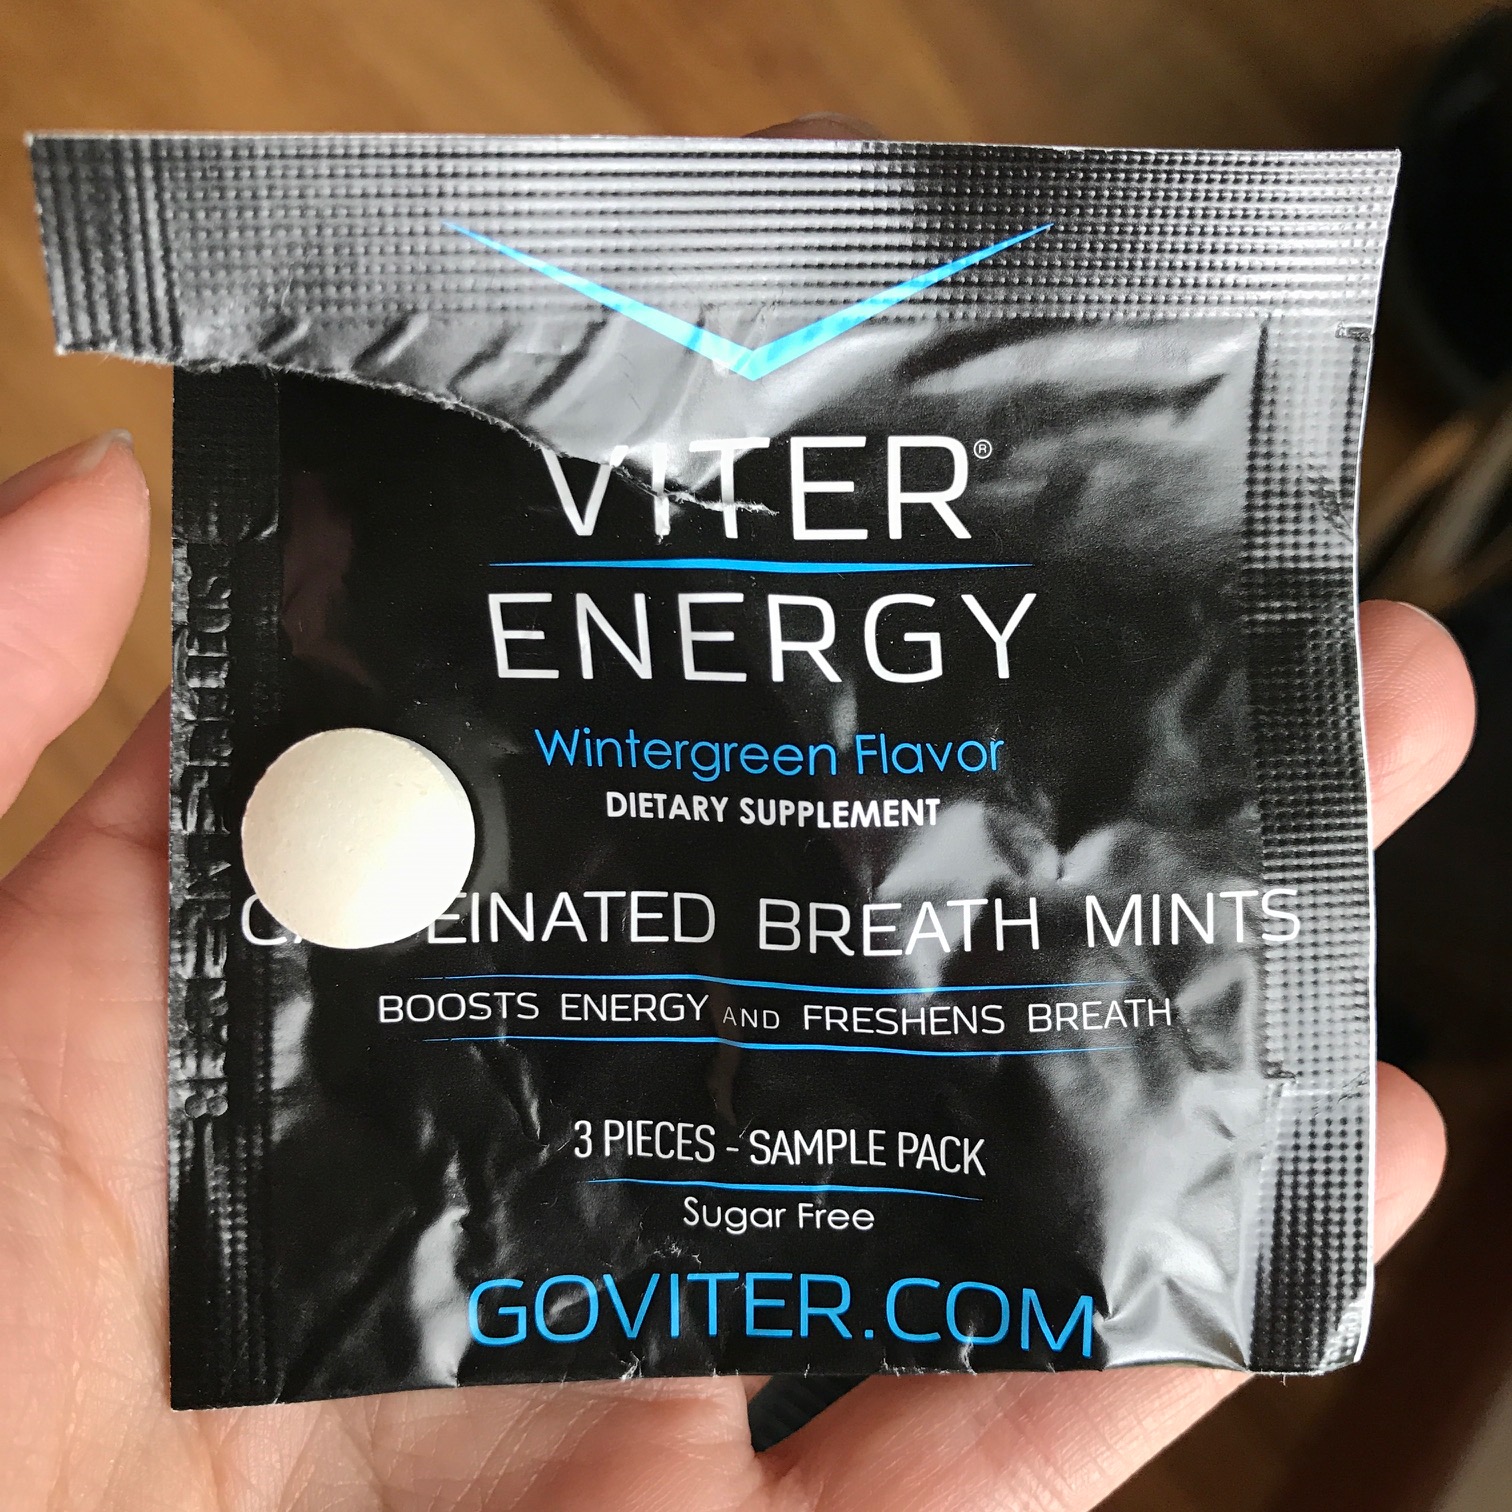 Viter Energy Mints